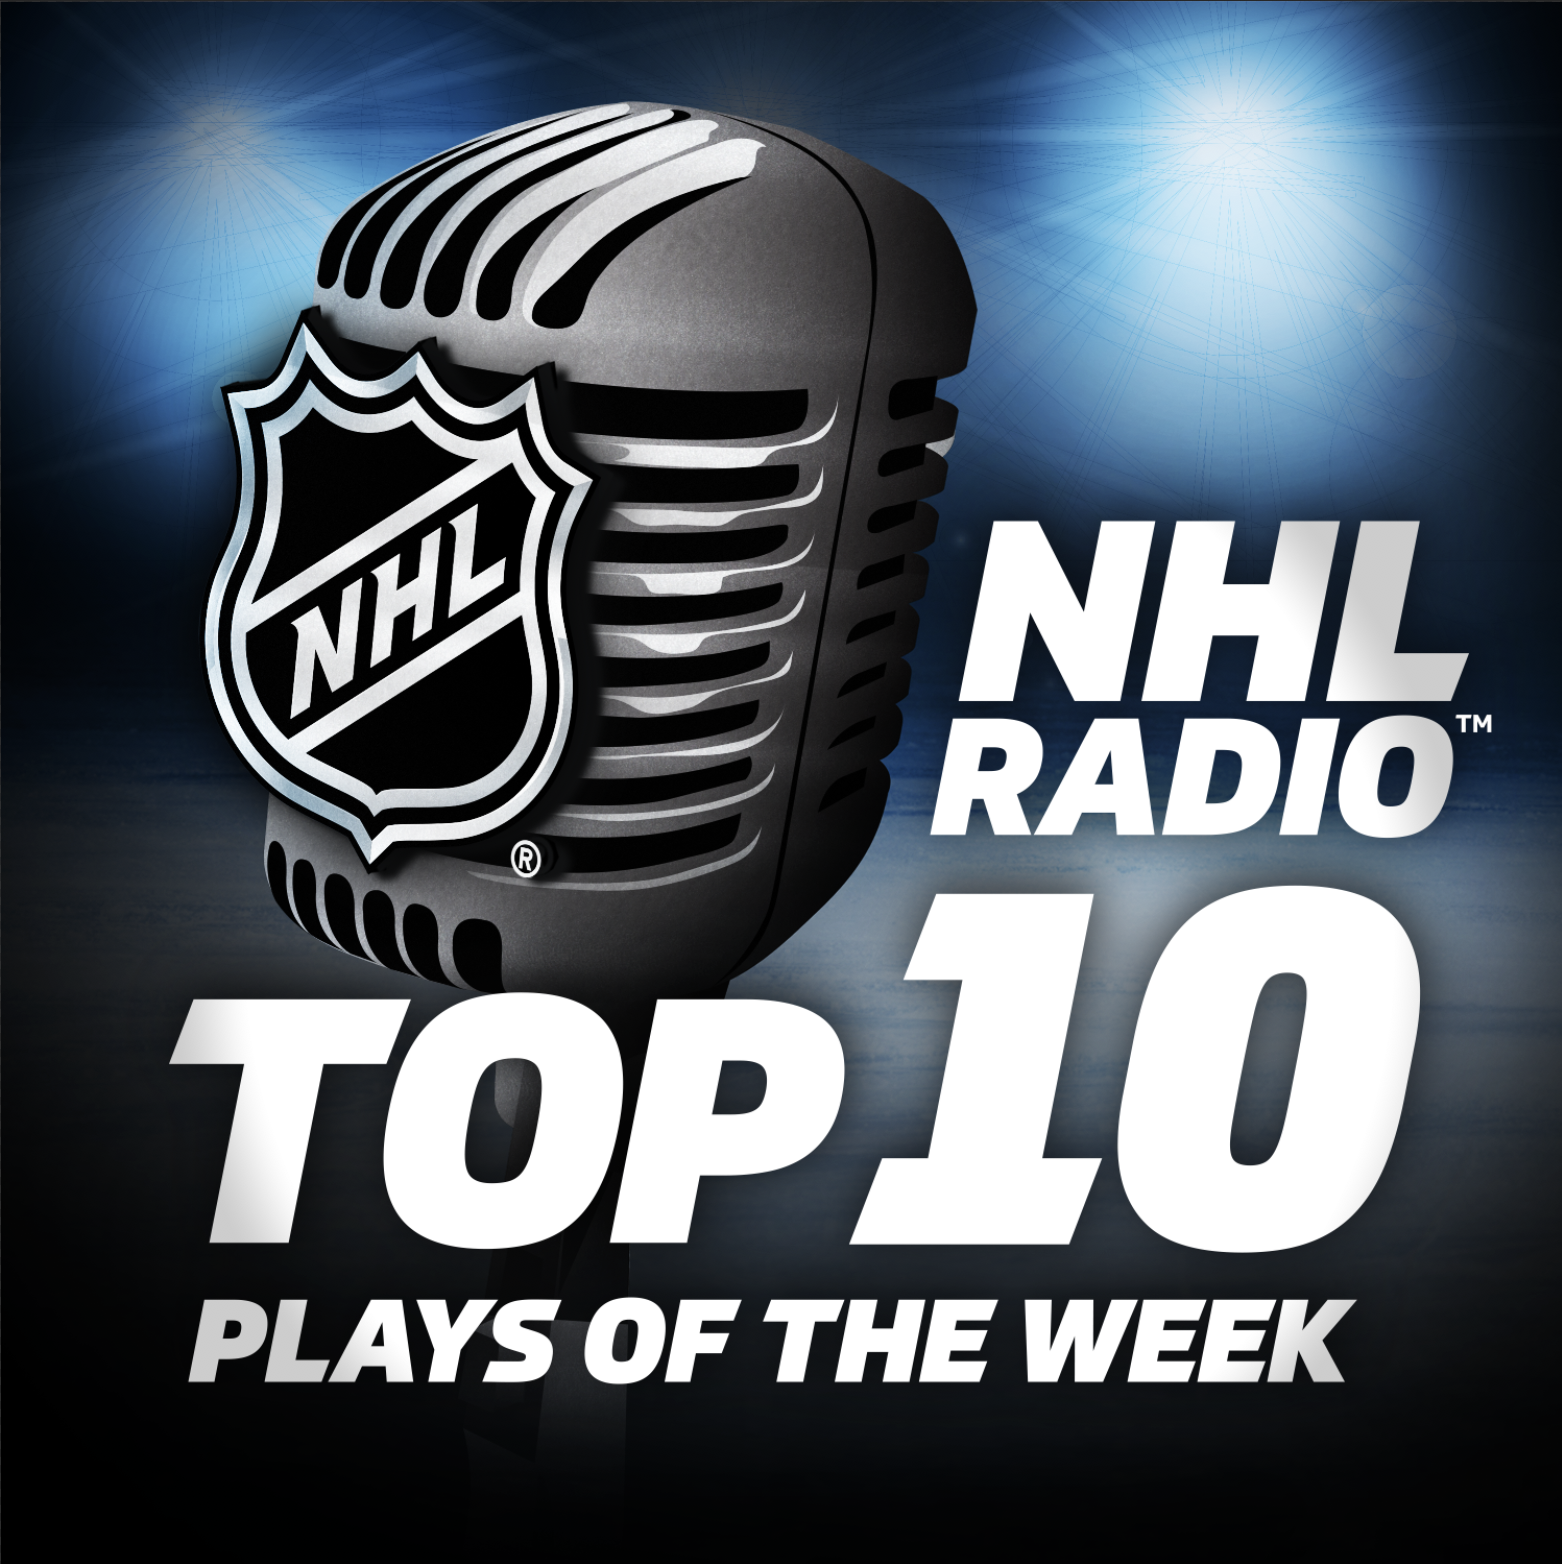 RADIO Top 10 Plays of the Week NHL RADIO Top 10 Plays of the Week (Week Ending Feb.